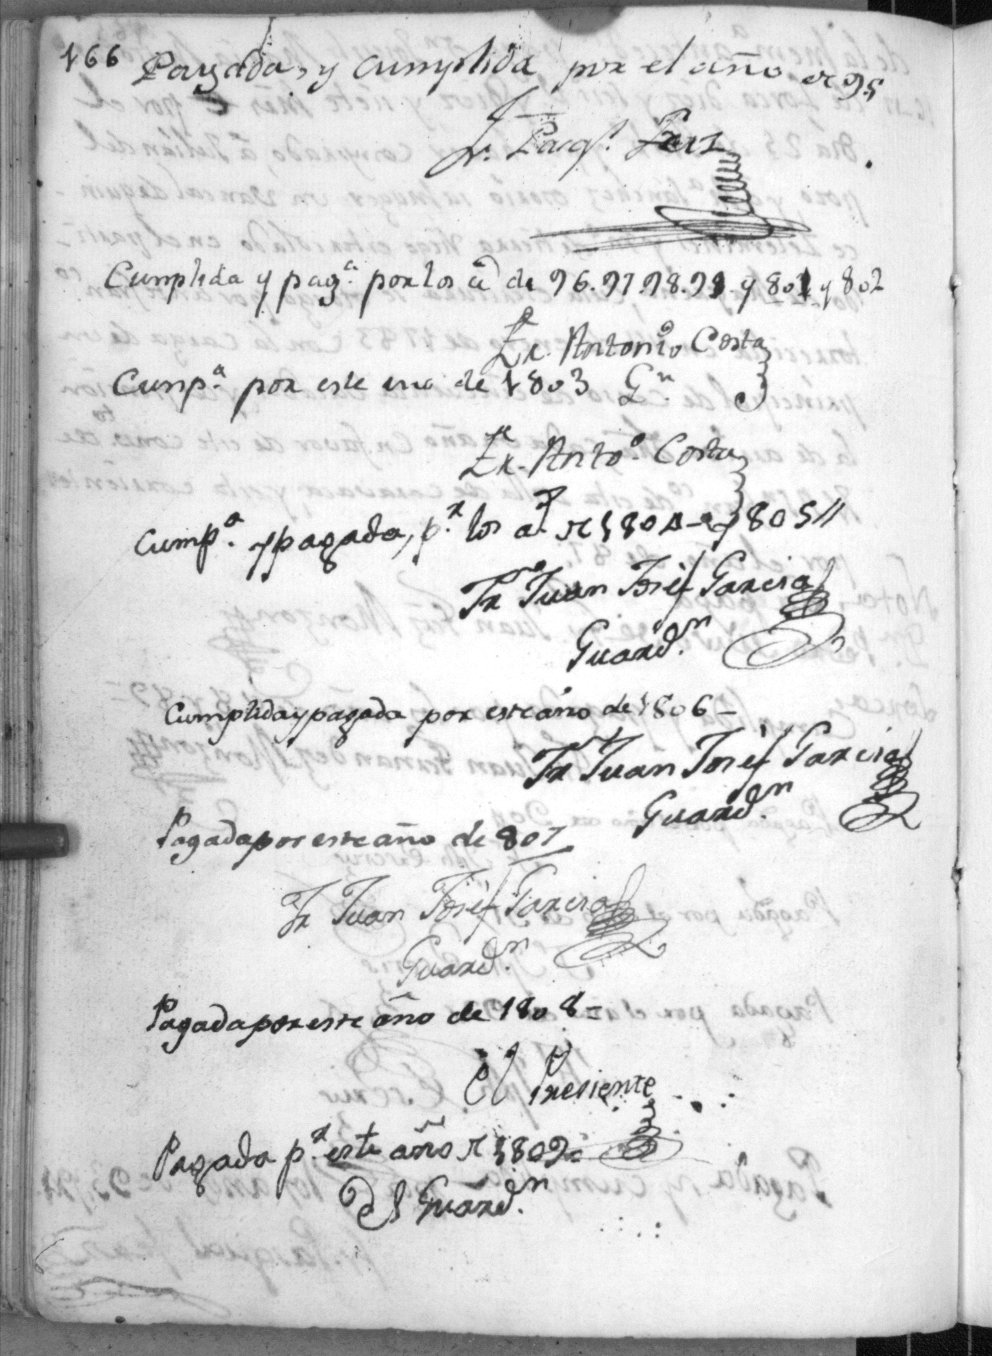 Registro de censos y pías memorias del Convento de San Francisco de Caravaca. Años 1787-1835.